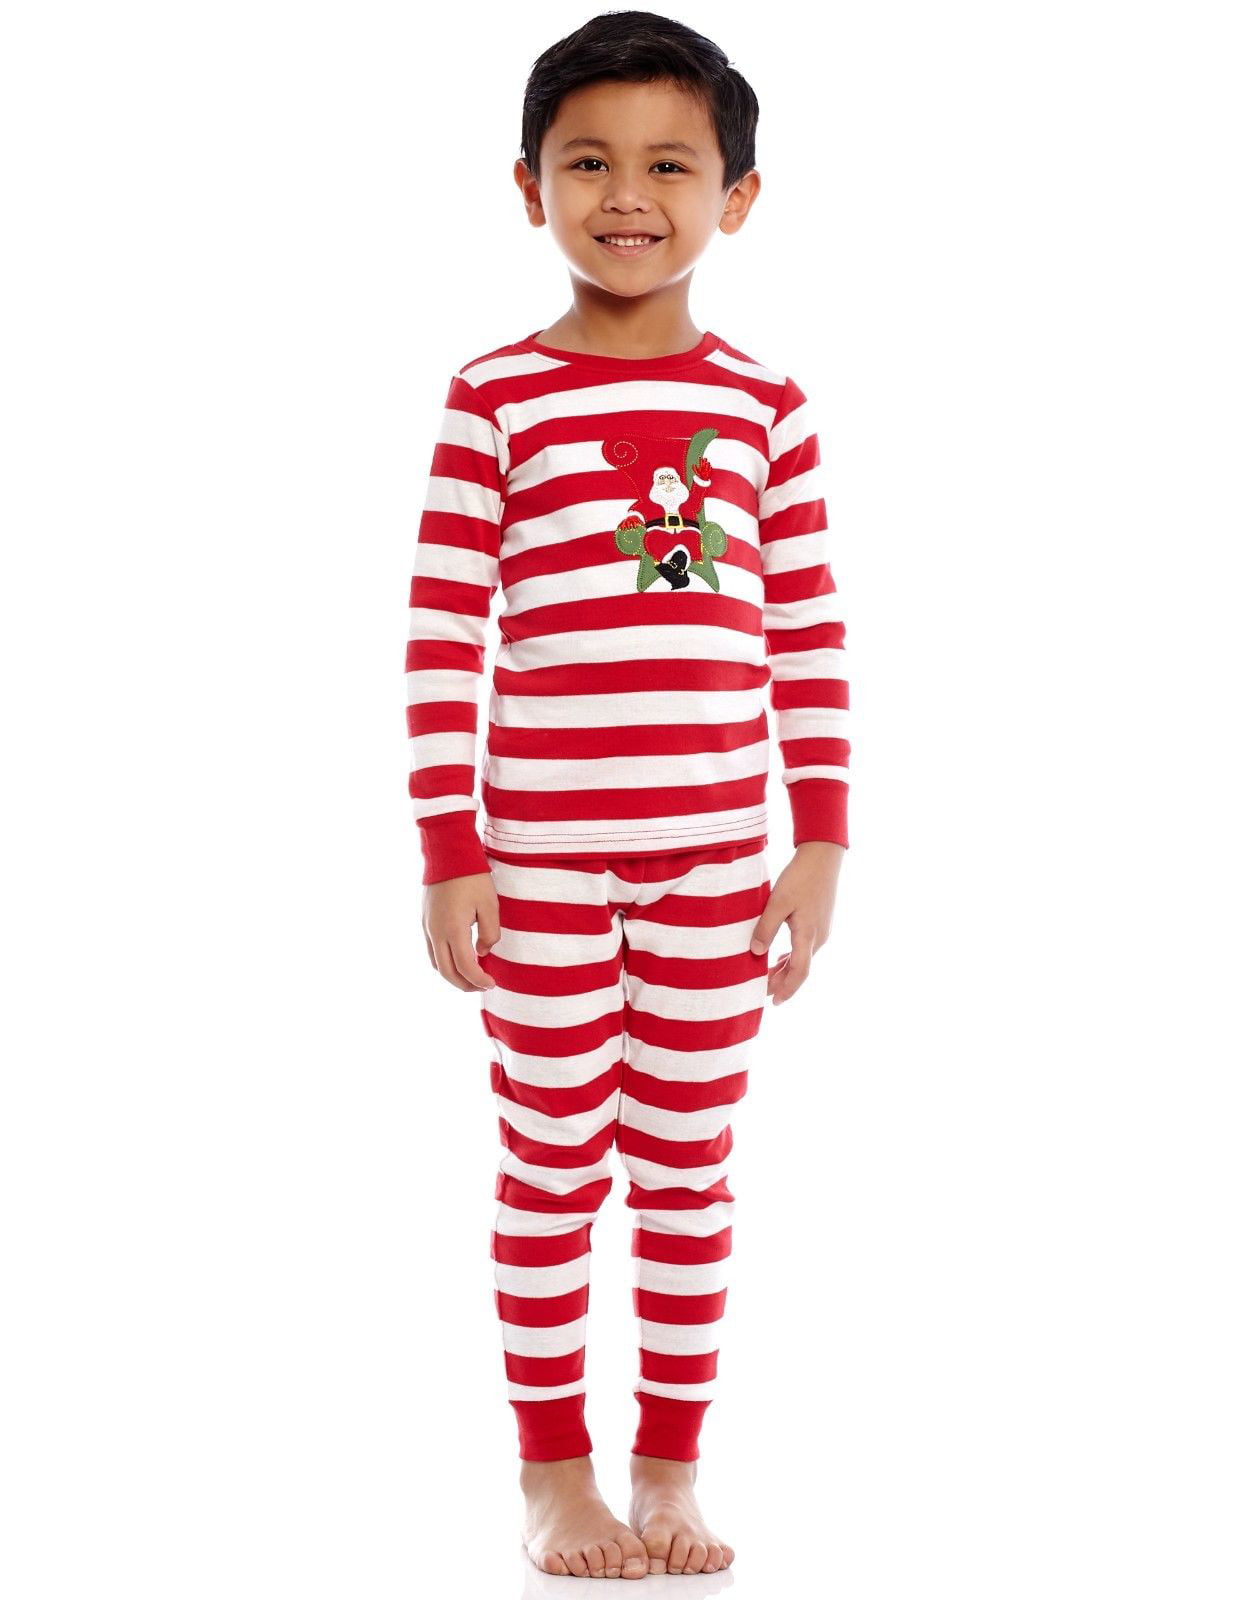 Little Girls Christmas Pajamas Set Children Santa Claus PJs 100% Cotton Size 3T-7T 